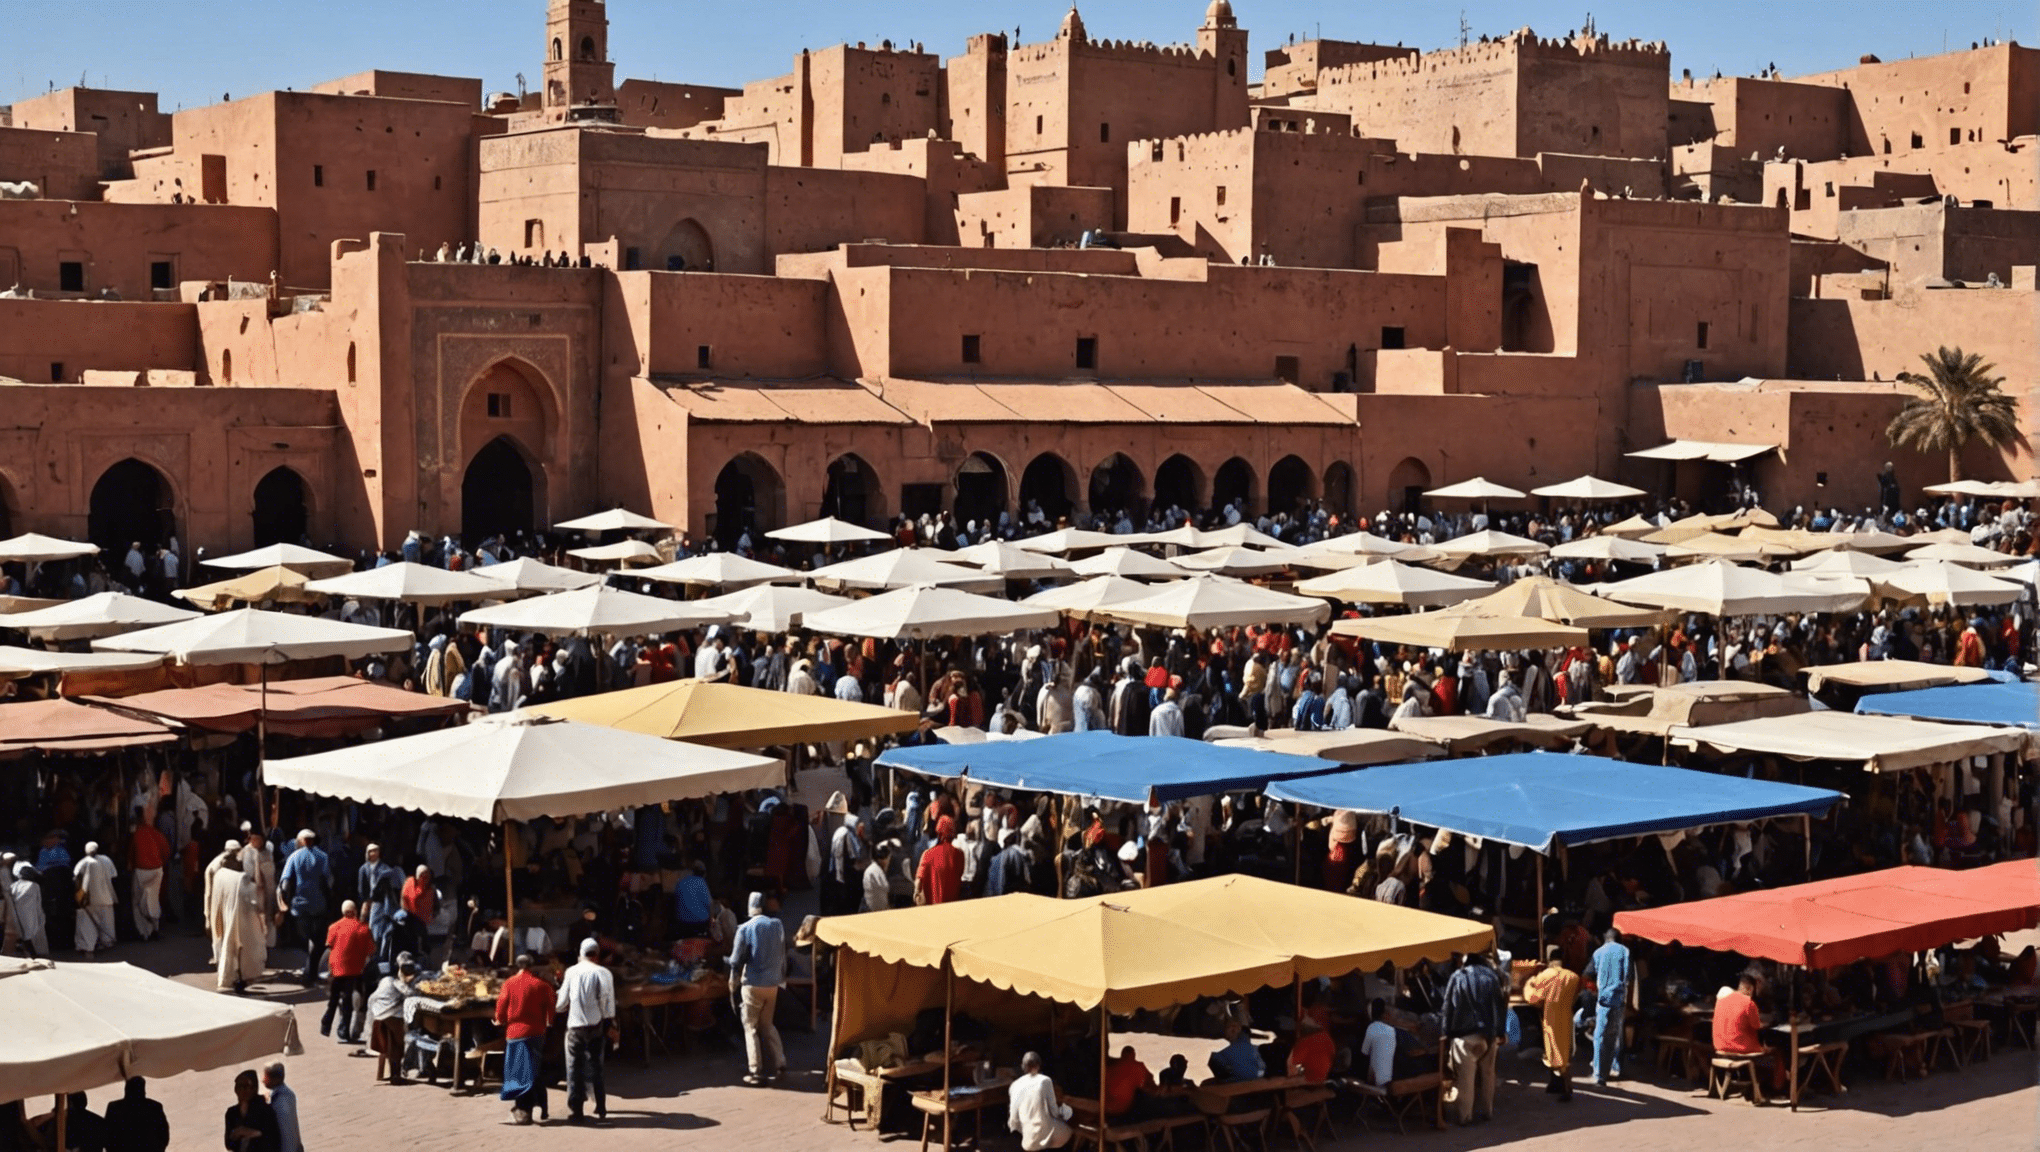 découvrez à quel point Marrakech fait chaud en mai avec notre guide complet. planifiez votre voyage en toute confiance et profitez du temps idéal dans cette ville magnifique.